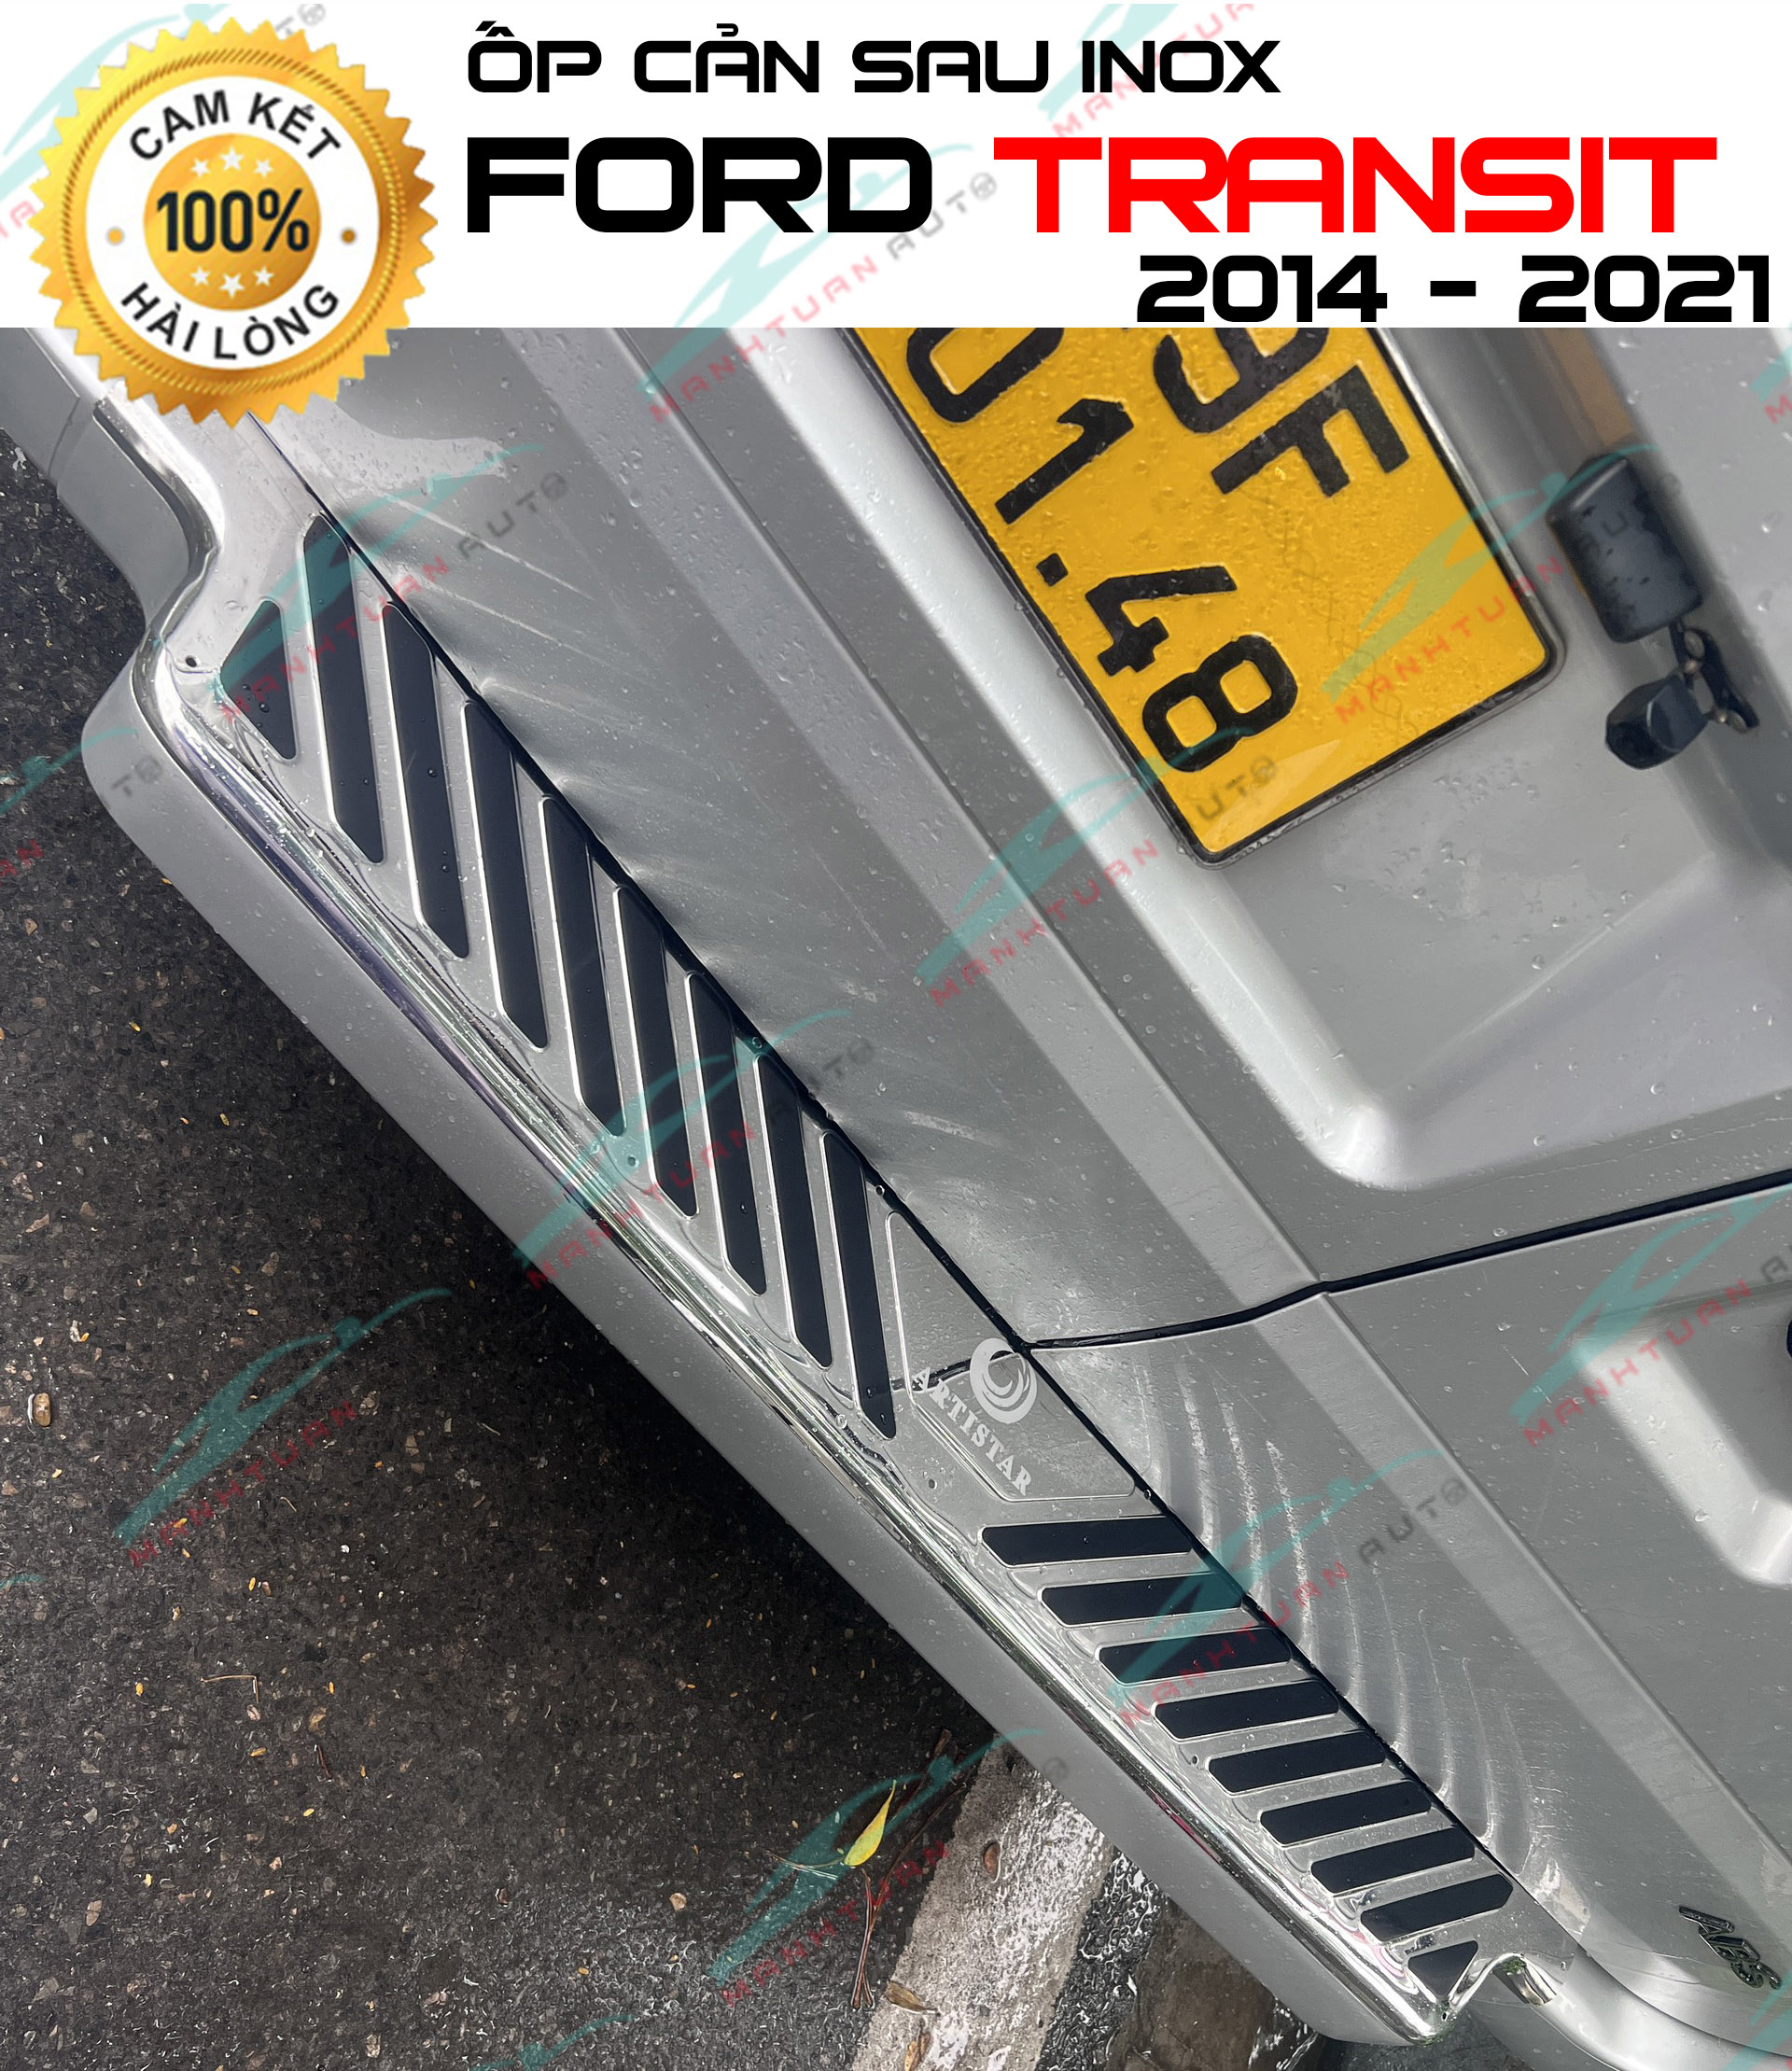 Ốp cản sau xe ( Miếng trên ) FORD TRANSIT 2014 - 2019 hàng inox cao cấp